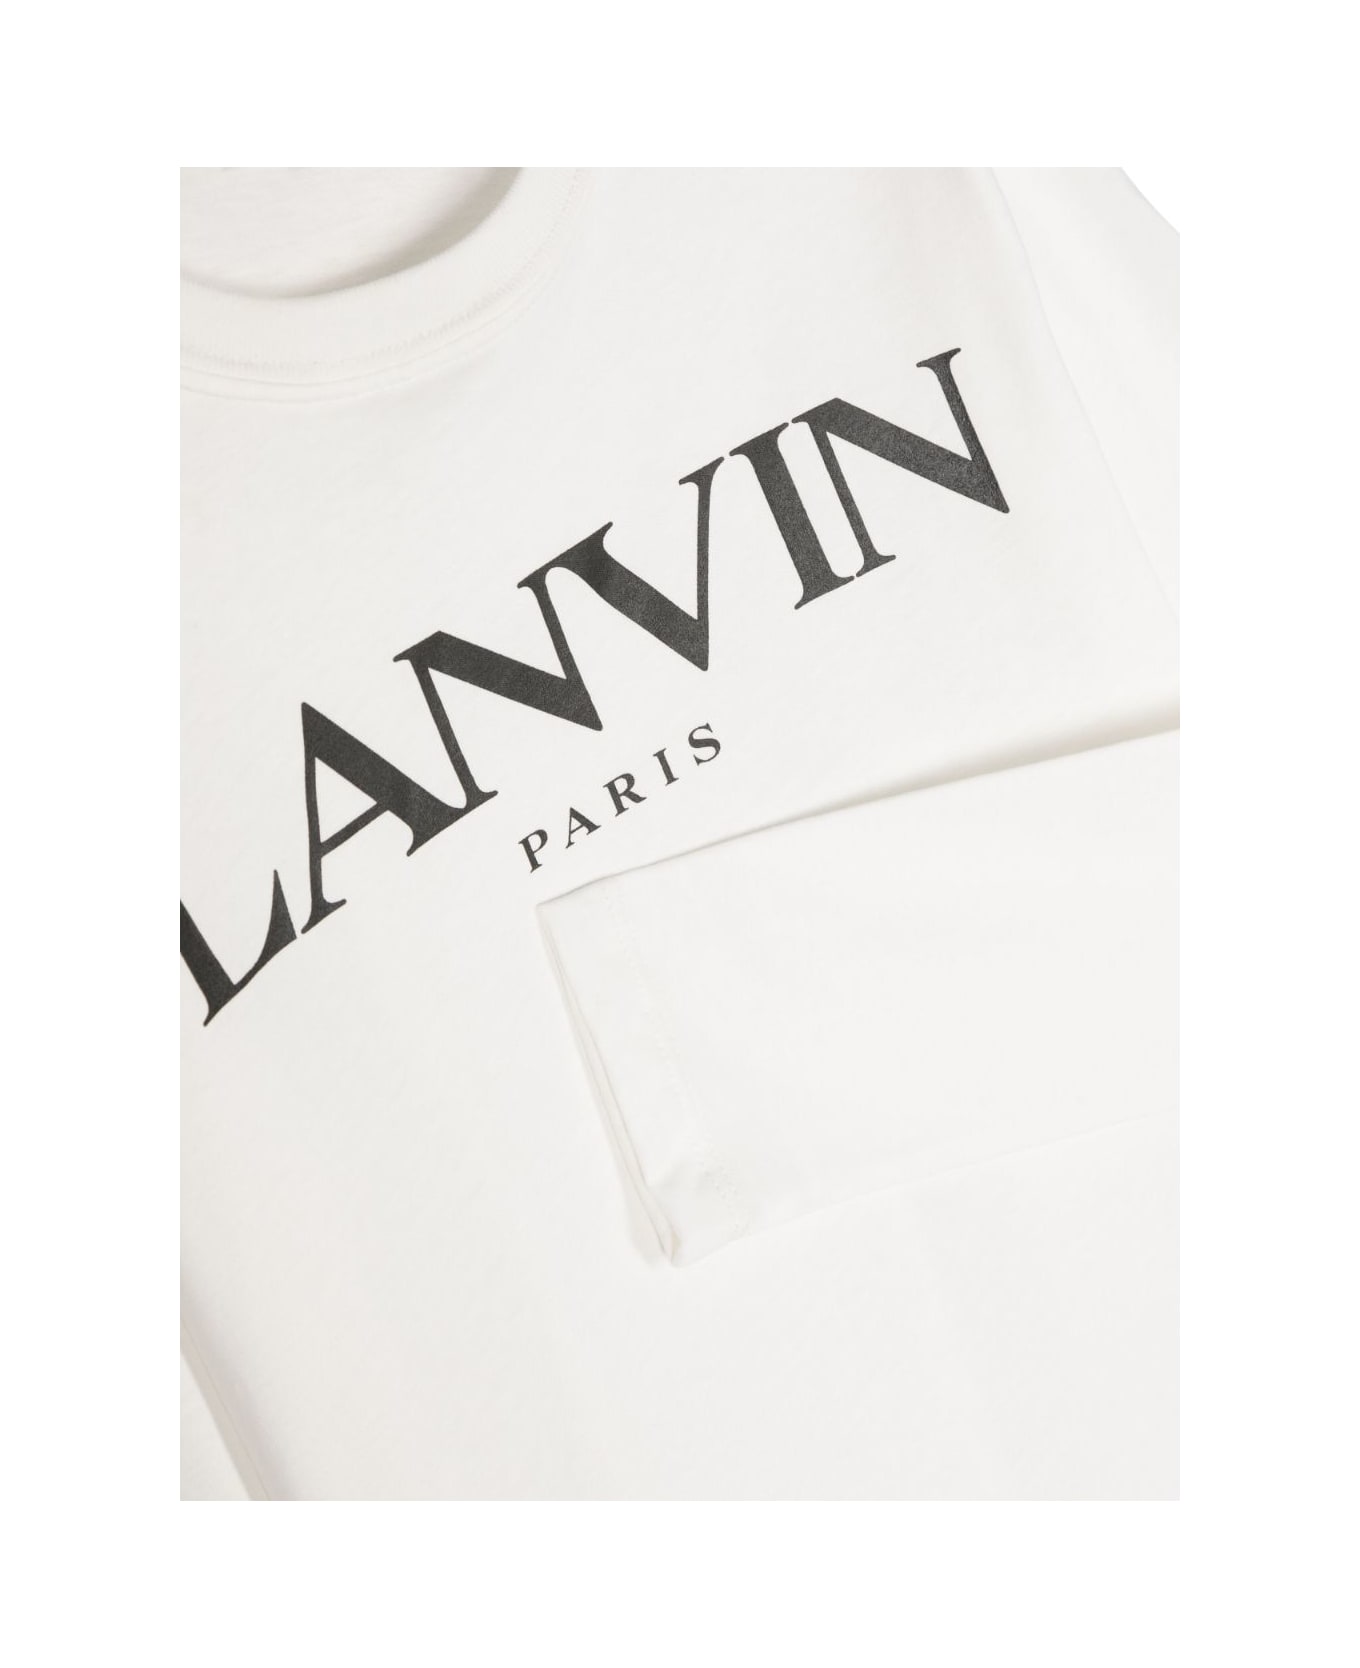 Lanvin T-shirt Nera In Jersey Di Cotone Bambino - Nero Tシャツ＆ポロシャツ